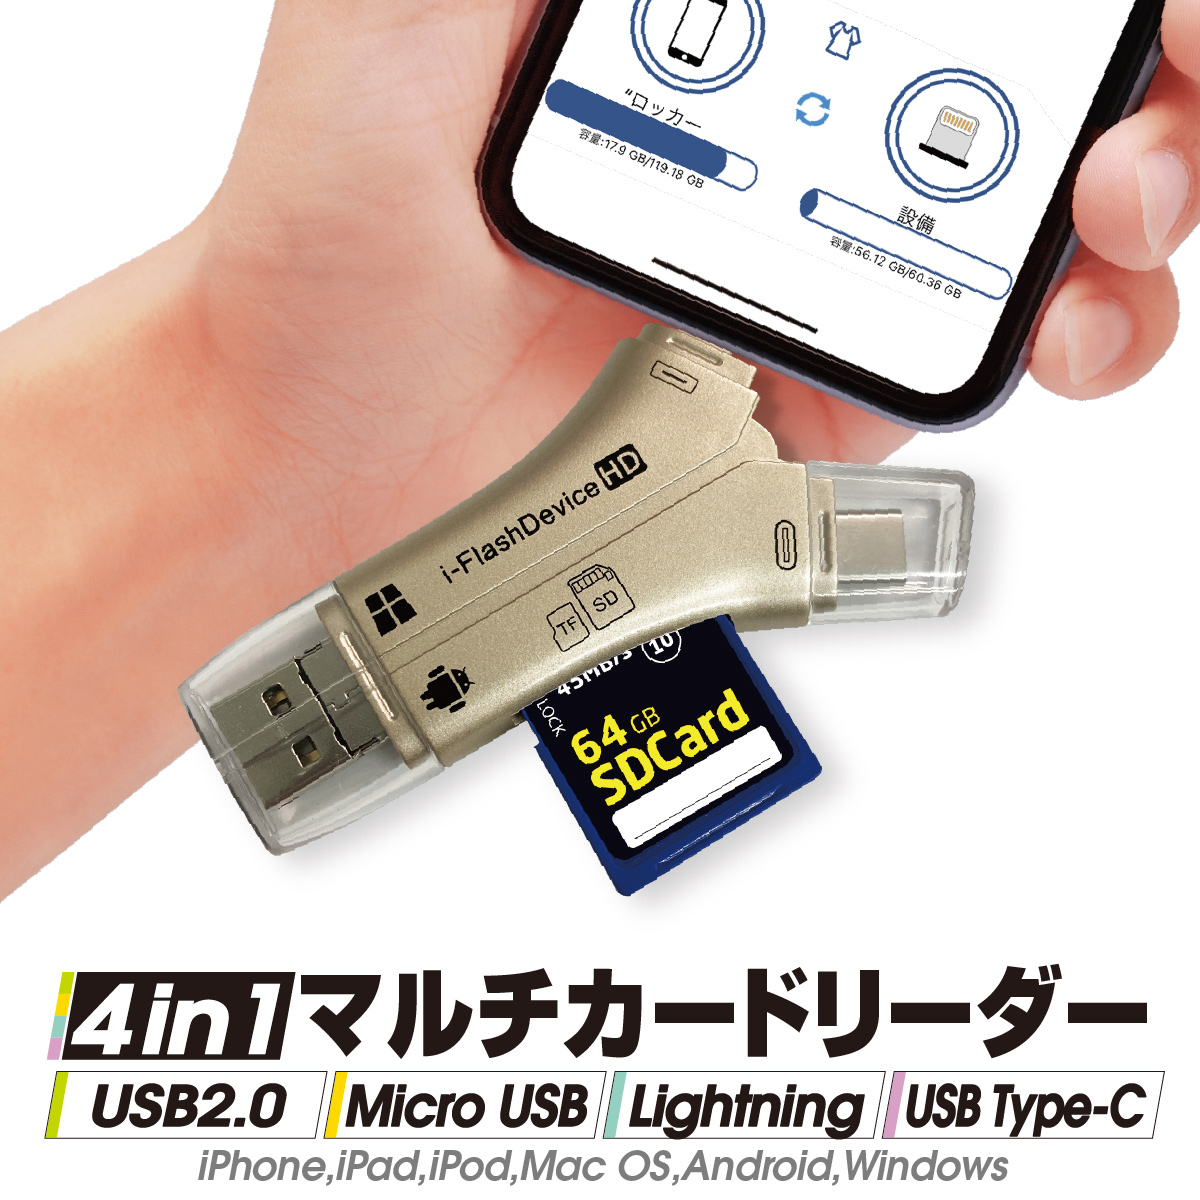 4in1 マルチカードリーダー USB2.0 Micro USB iPhone Type-c スマホ 本物 SD カードリーダー カメラリーダー メモリー 移行 転送 Type-C データ 写真 Android iflash 保存 バックアップ 付与 iPad 携帯 移動